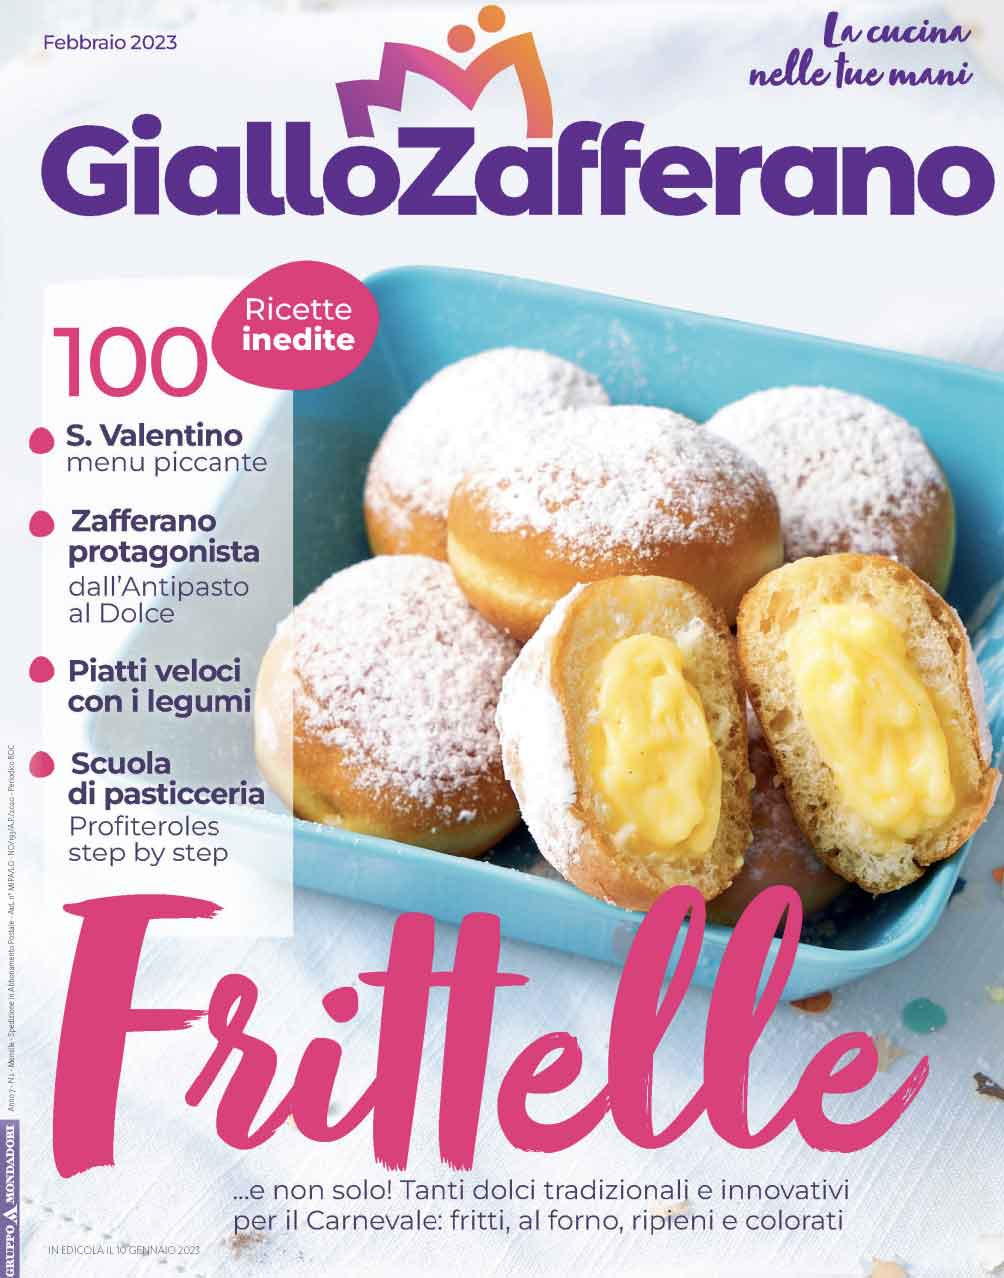 Mondadori: il magazine di Giallozafferano si rinnova, la raccolta curata da Mediamond cresce a due cifre nei primi due mesi del 2023